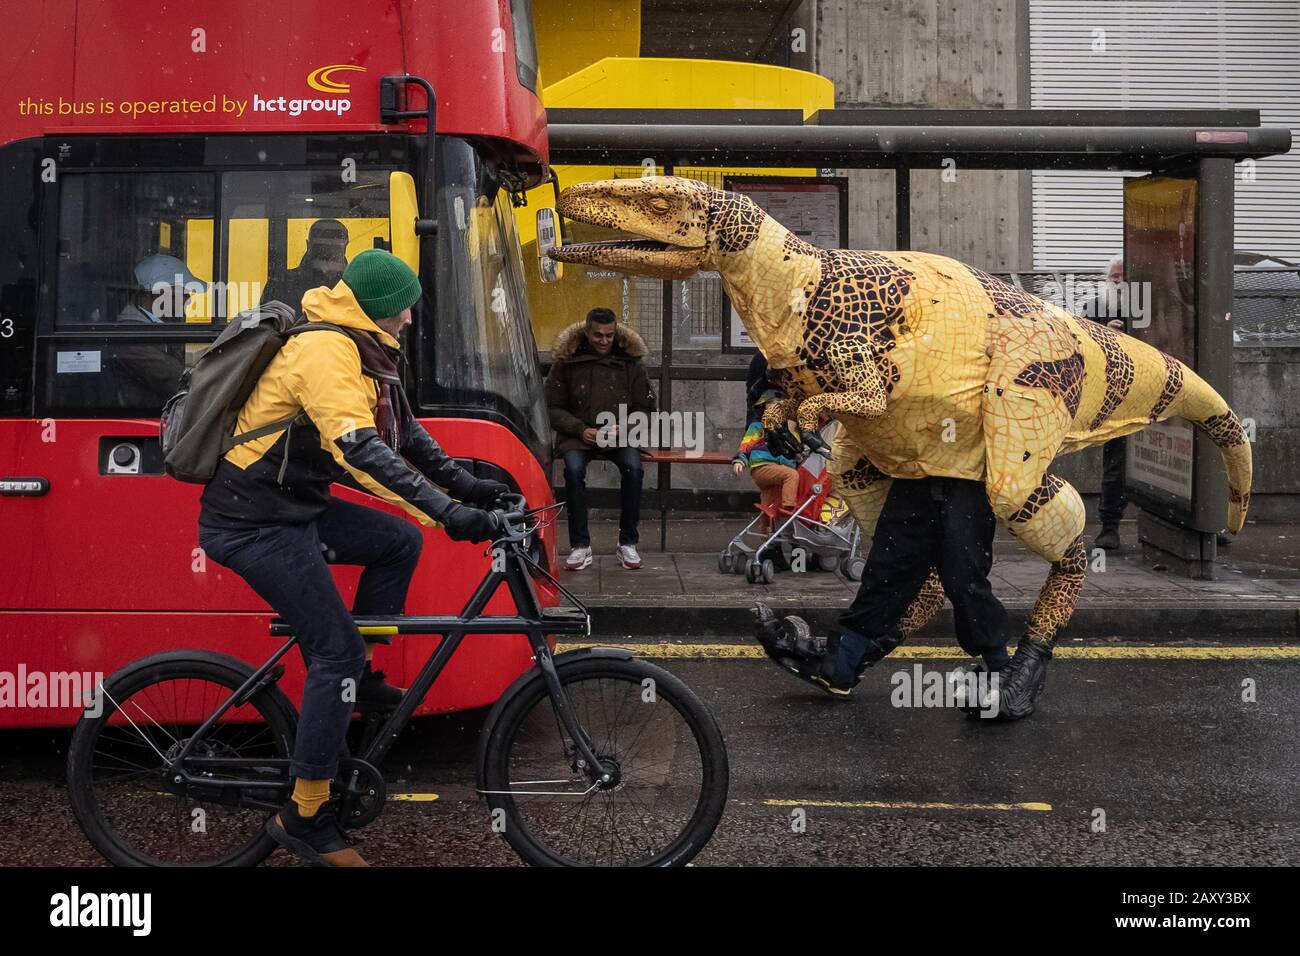 Un cucciolo di dinosauro Velociraptor, simile a una vita, può prendere un autobus sul Waterloo Bridge come un'attrazione pubblicitaria per 'Erth's Dinosaur Zoo', Southbank, Londra, Regno Unito Foto Stock